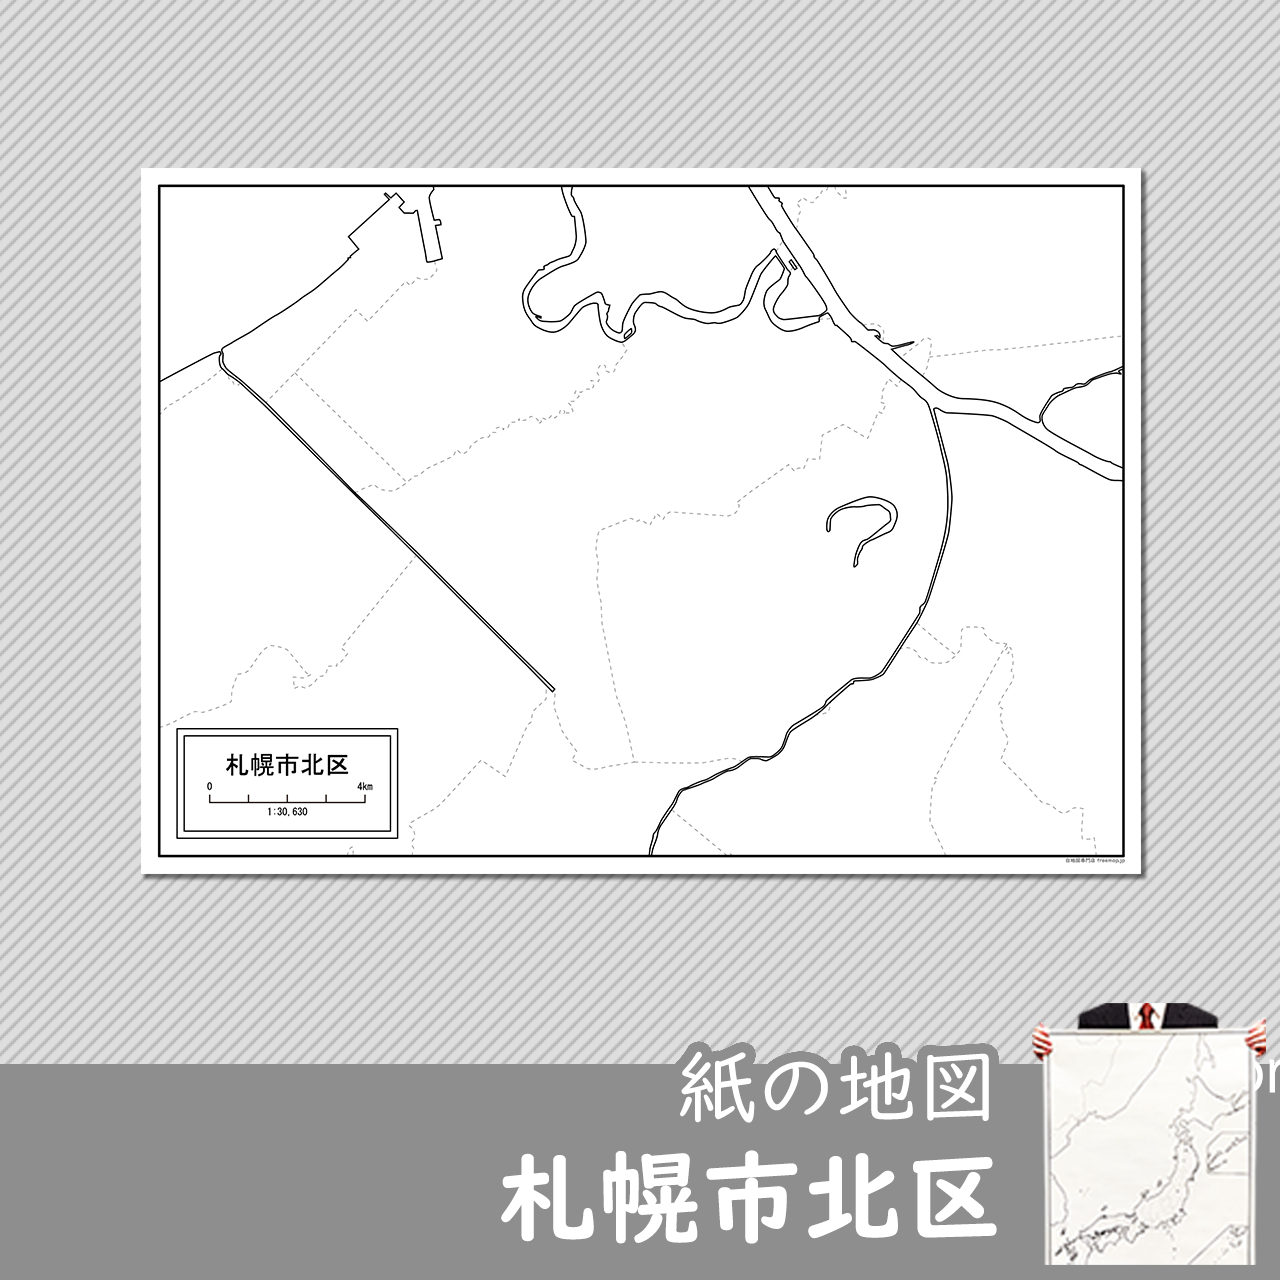 札幌市北区の紙の白地図のサムネイル